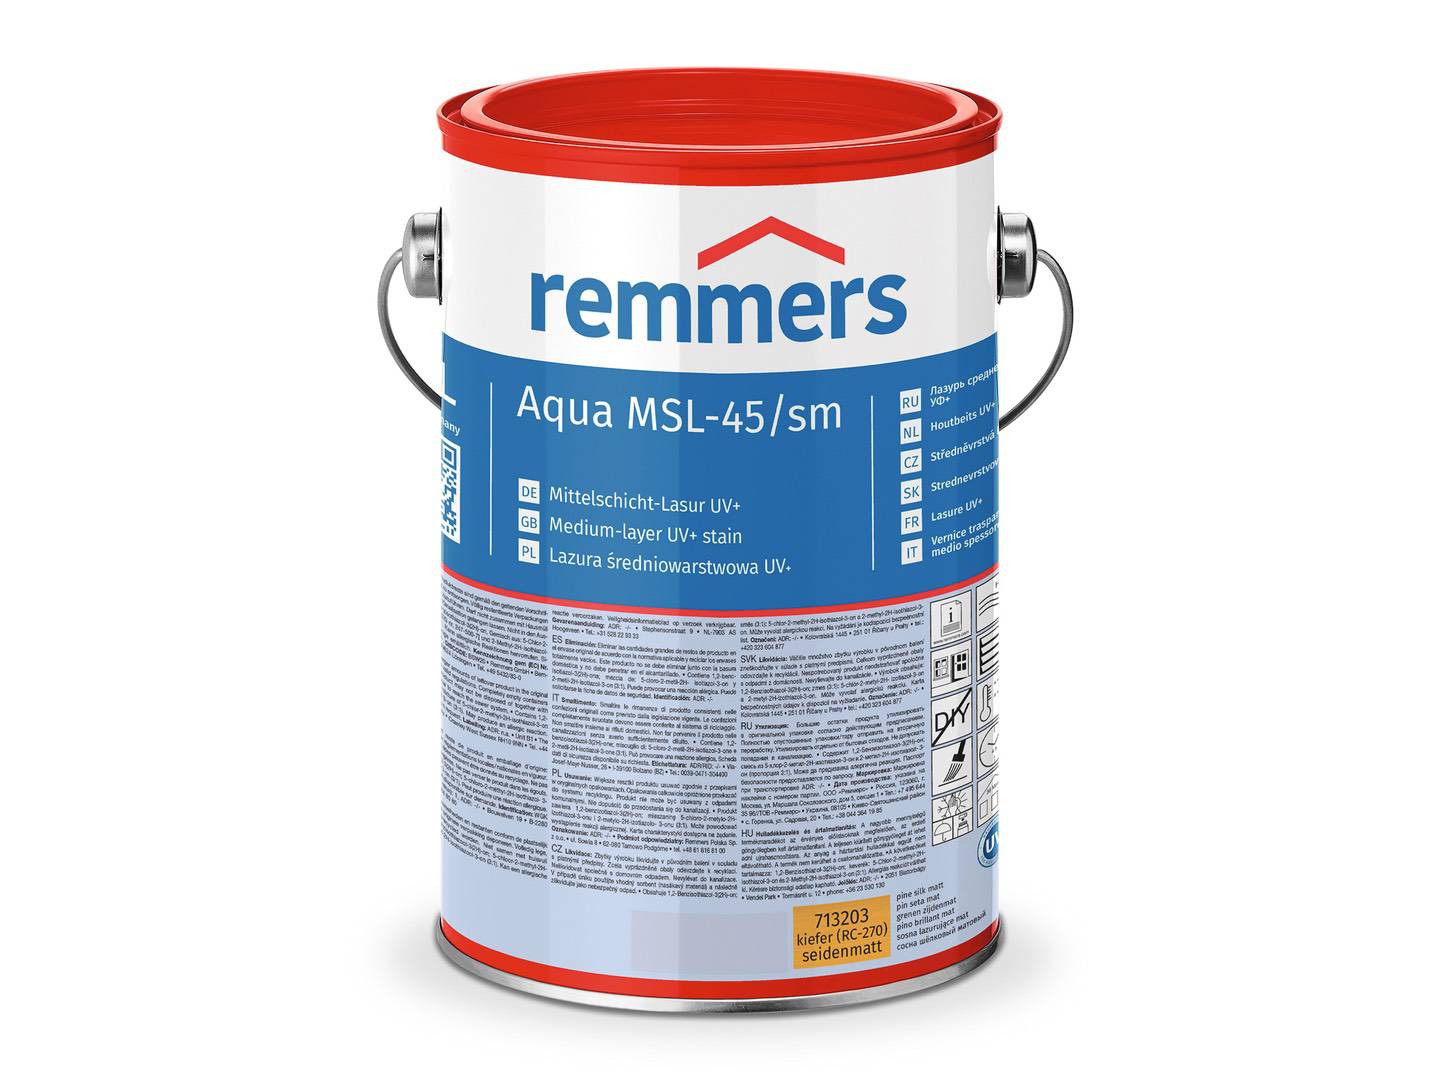 REMMERS Aqua MSL-45/sm-Mittelschicht-Lasur UV+ nussbaum (RC-660) 2,50 l